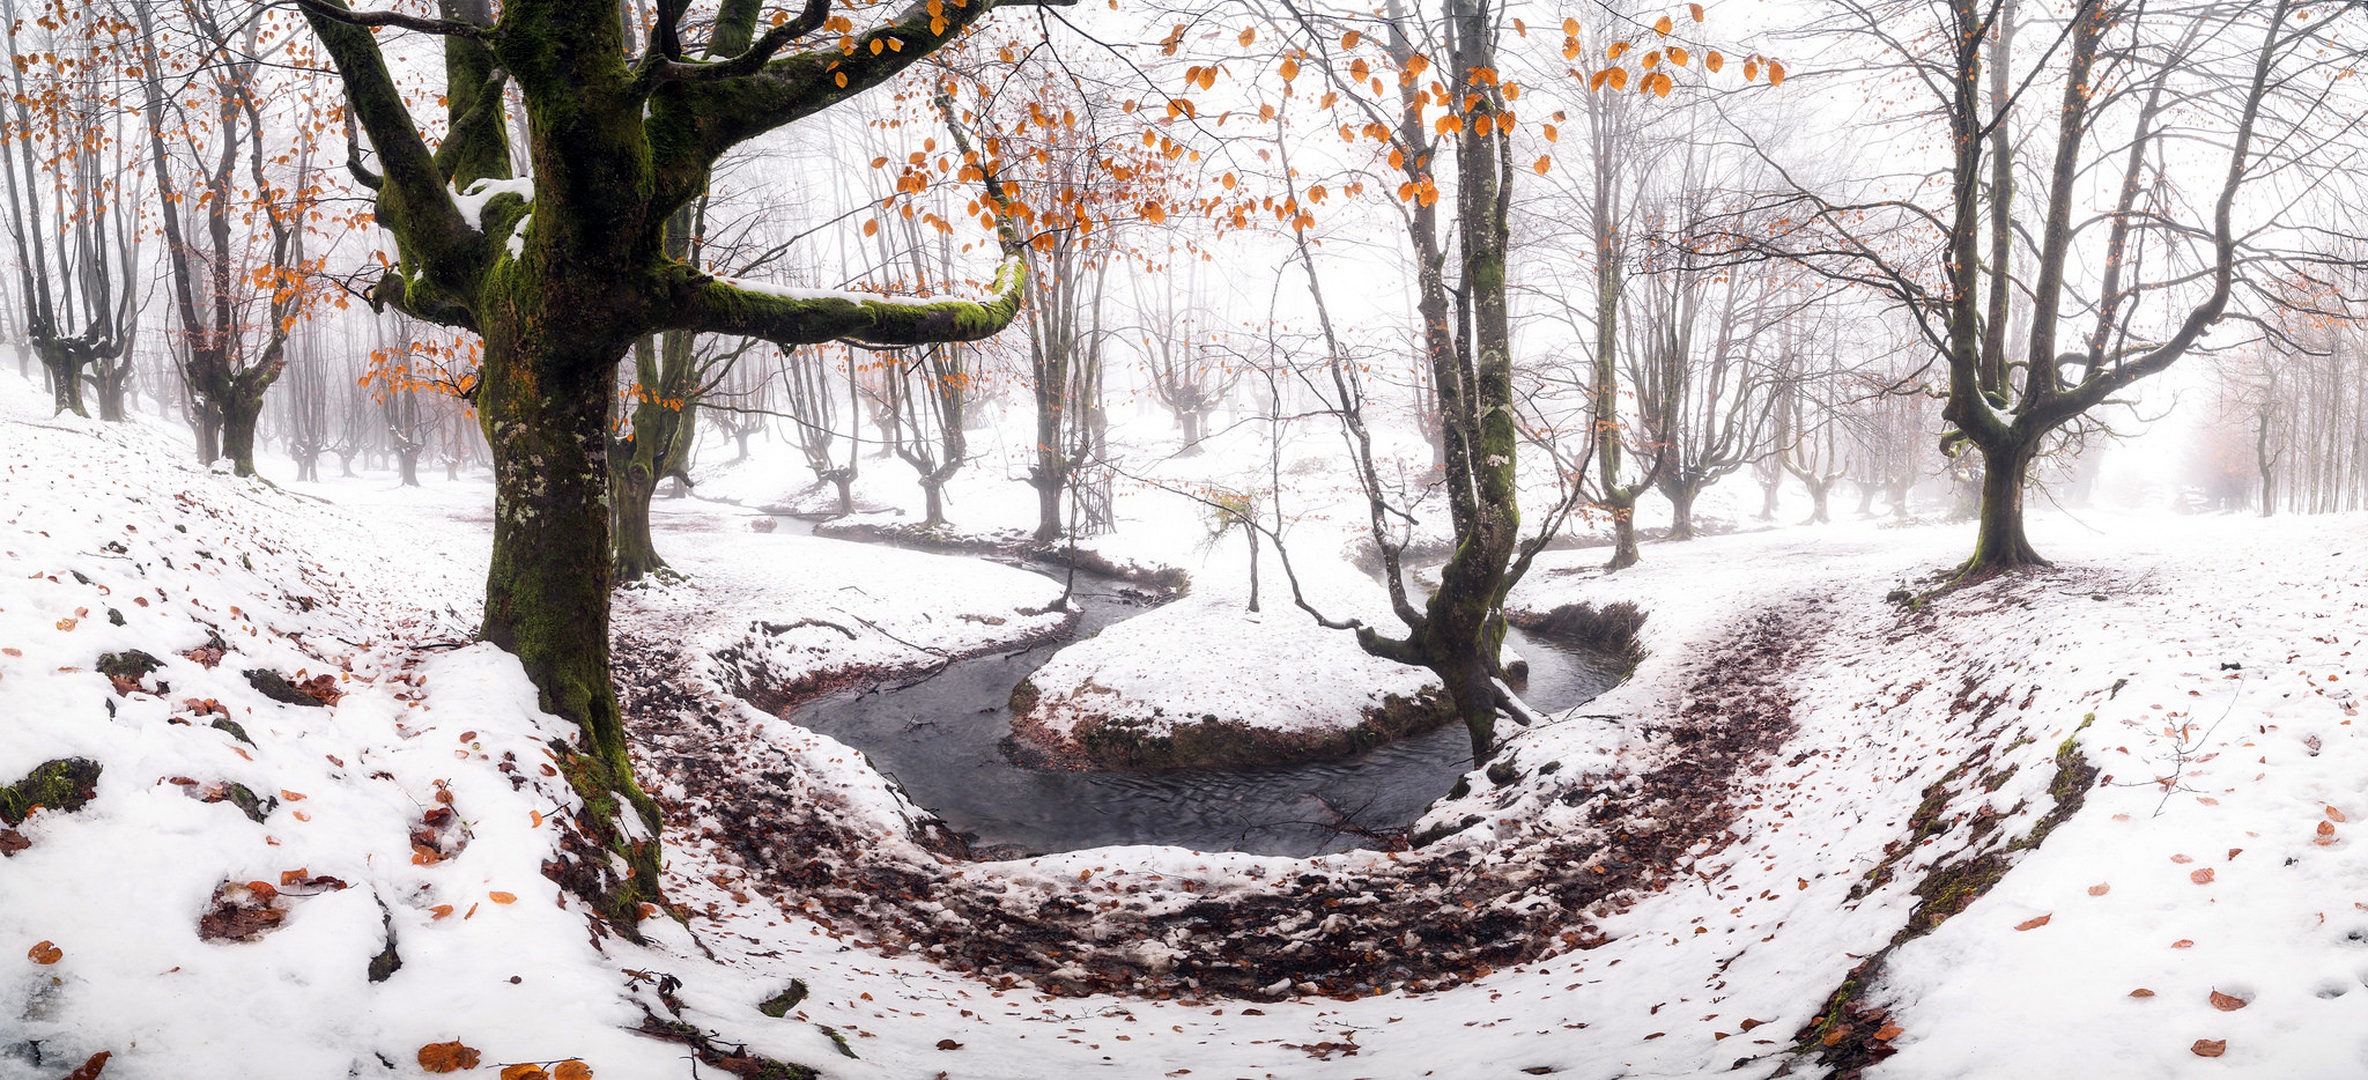 Скачать картинку Зима, Природа, Снег, Дерево, Ручей, Земля/природа в телефон бесплатно.